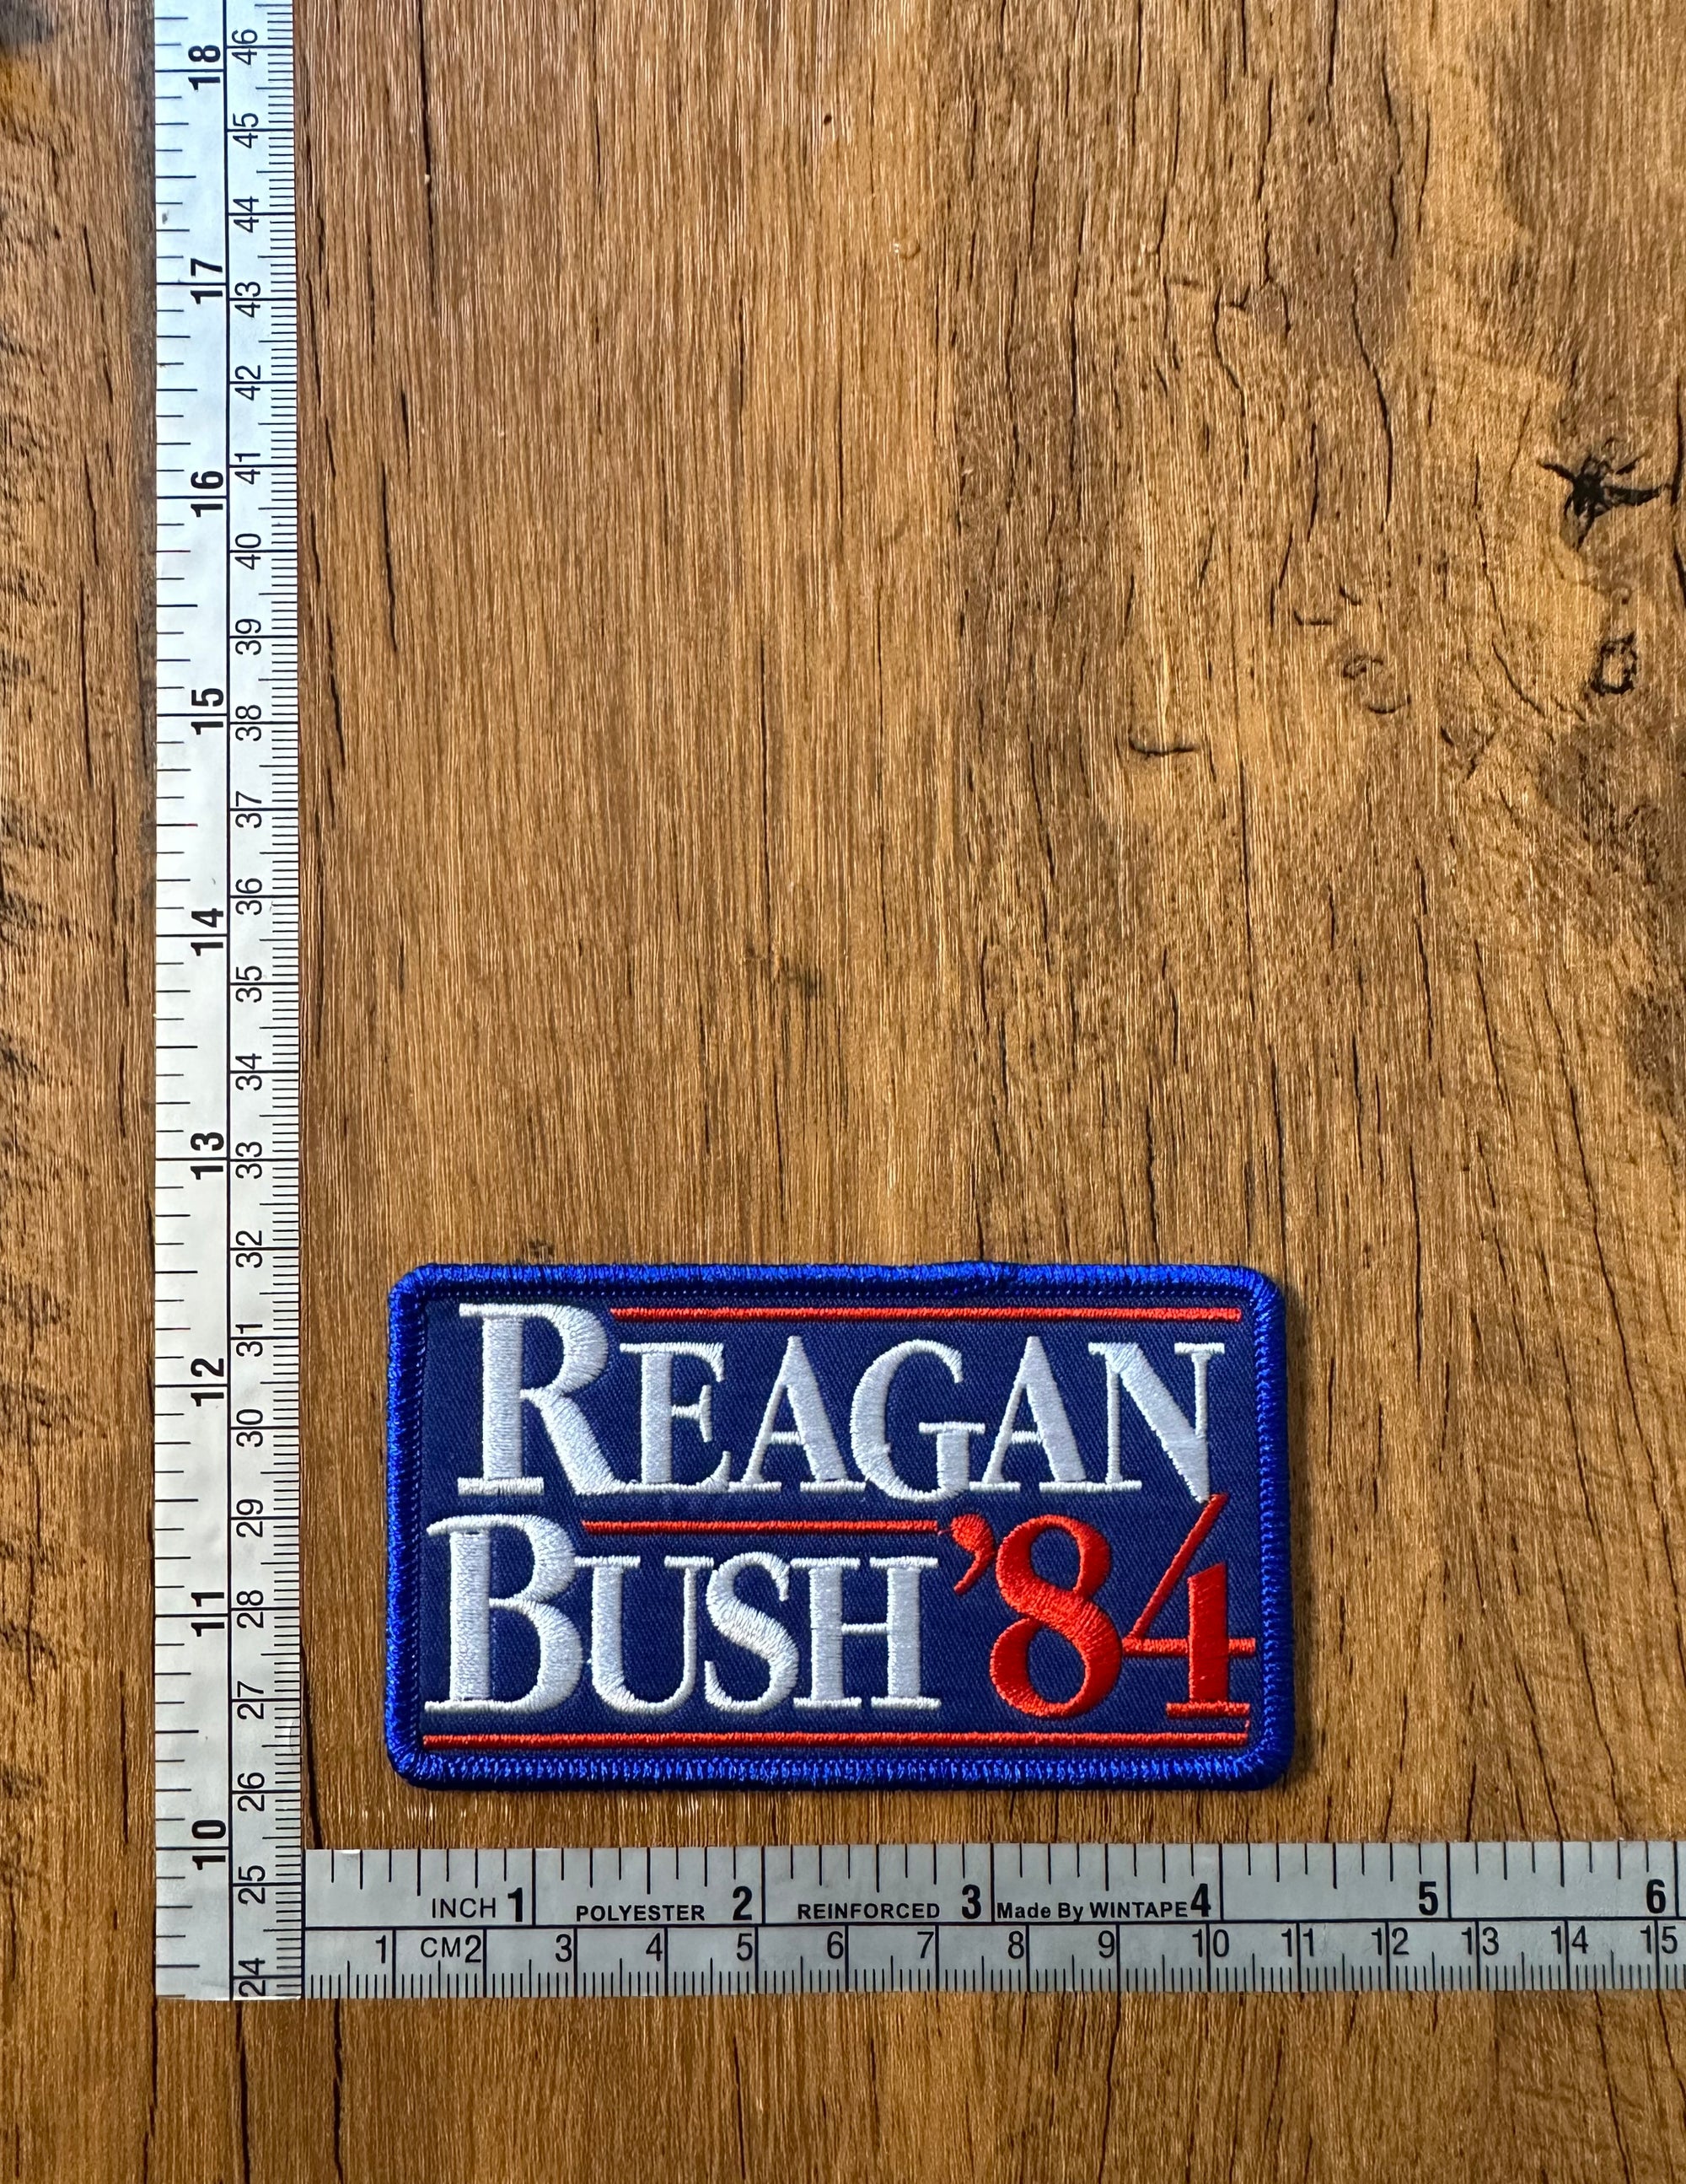 Reagan Bush ’84